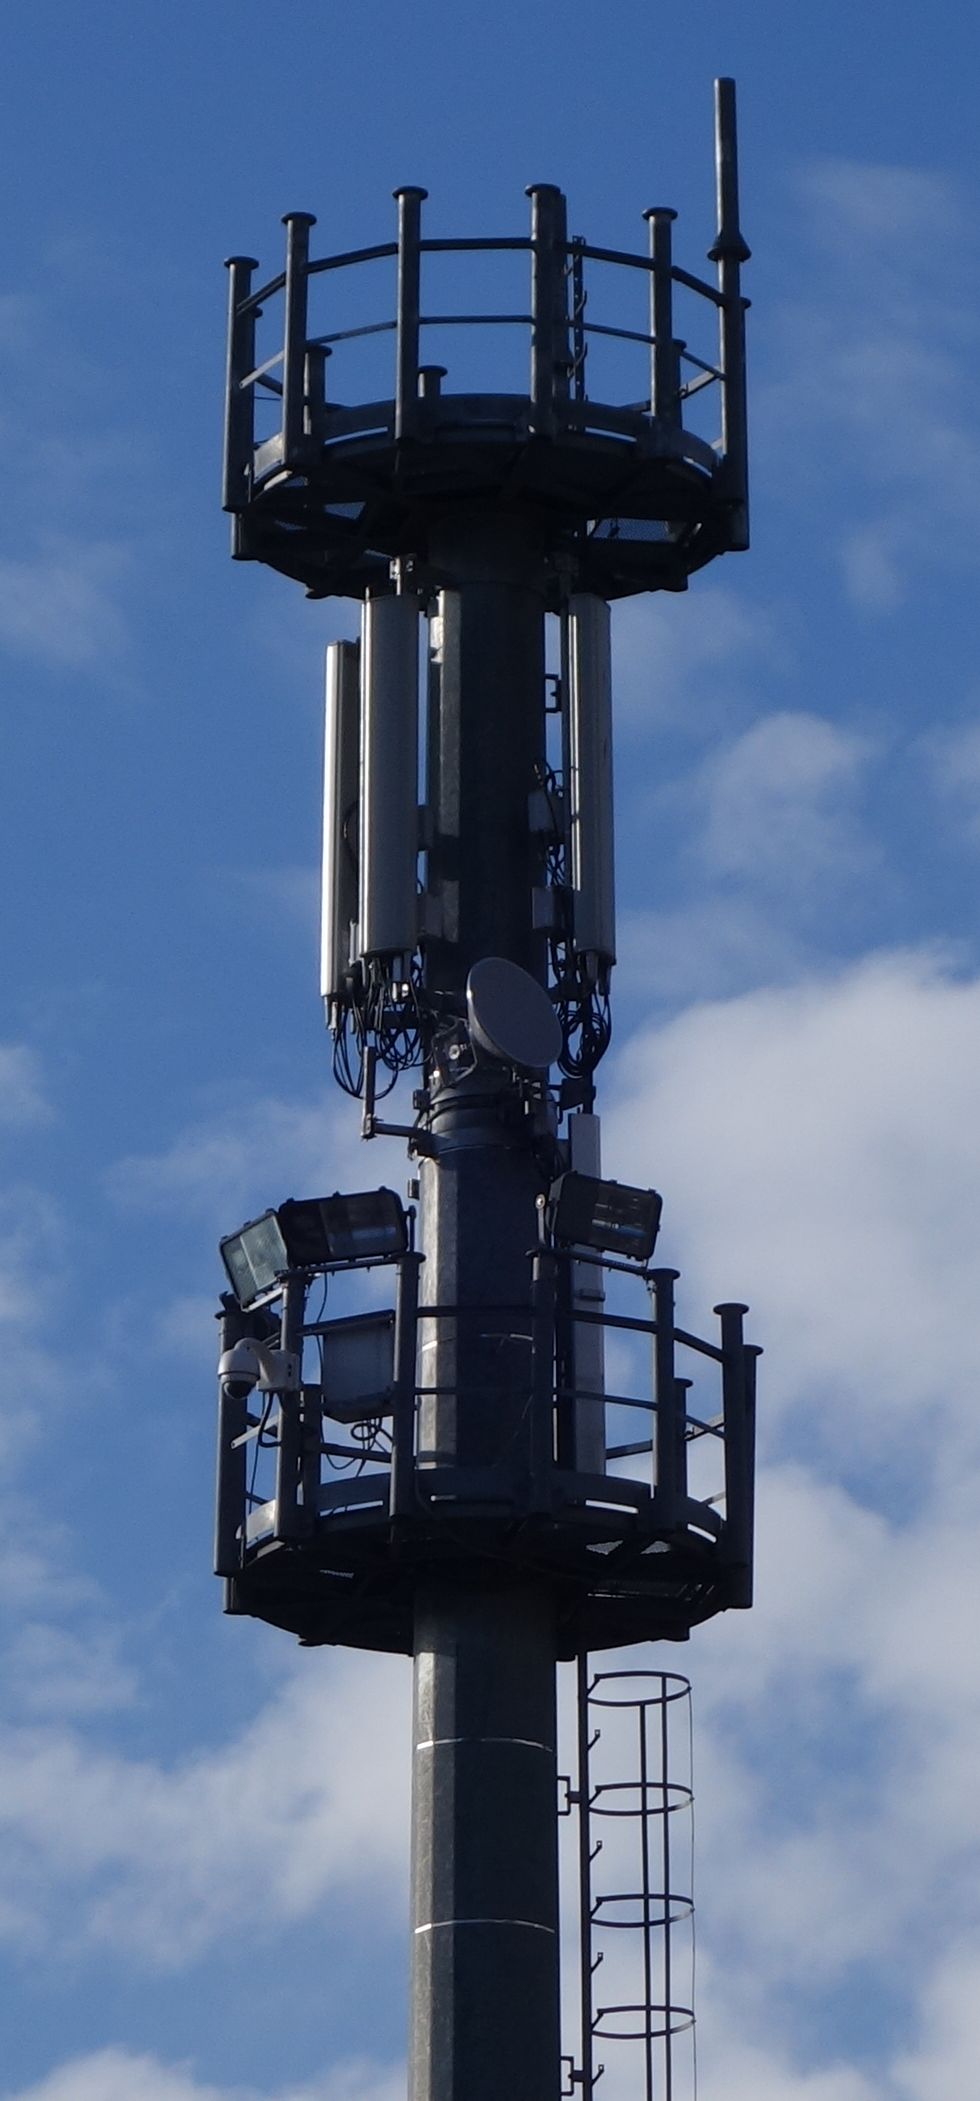 Der Masten mit den Antennen von Wind im Februar 2018